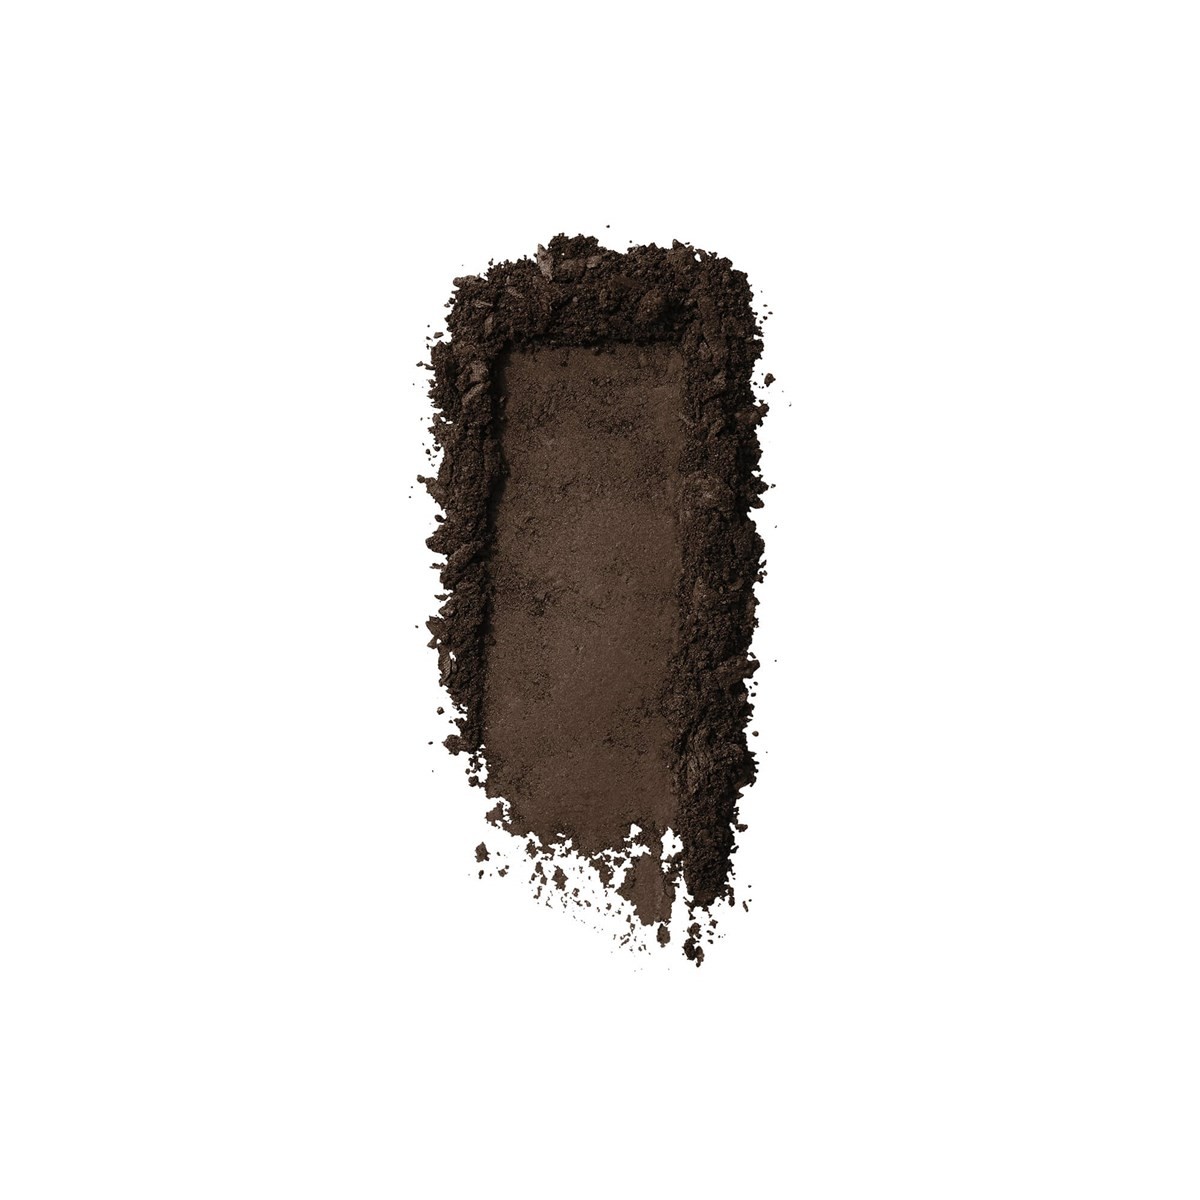 4.5 - Neutral deep brown